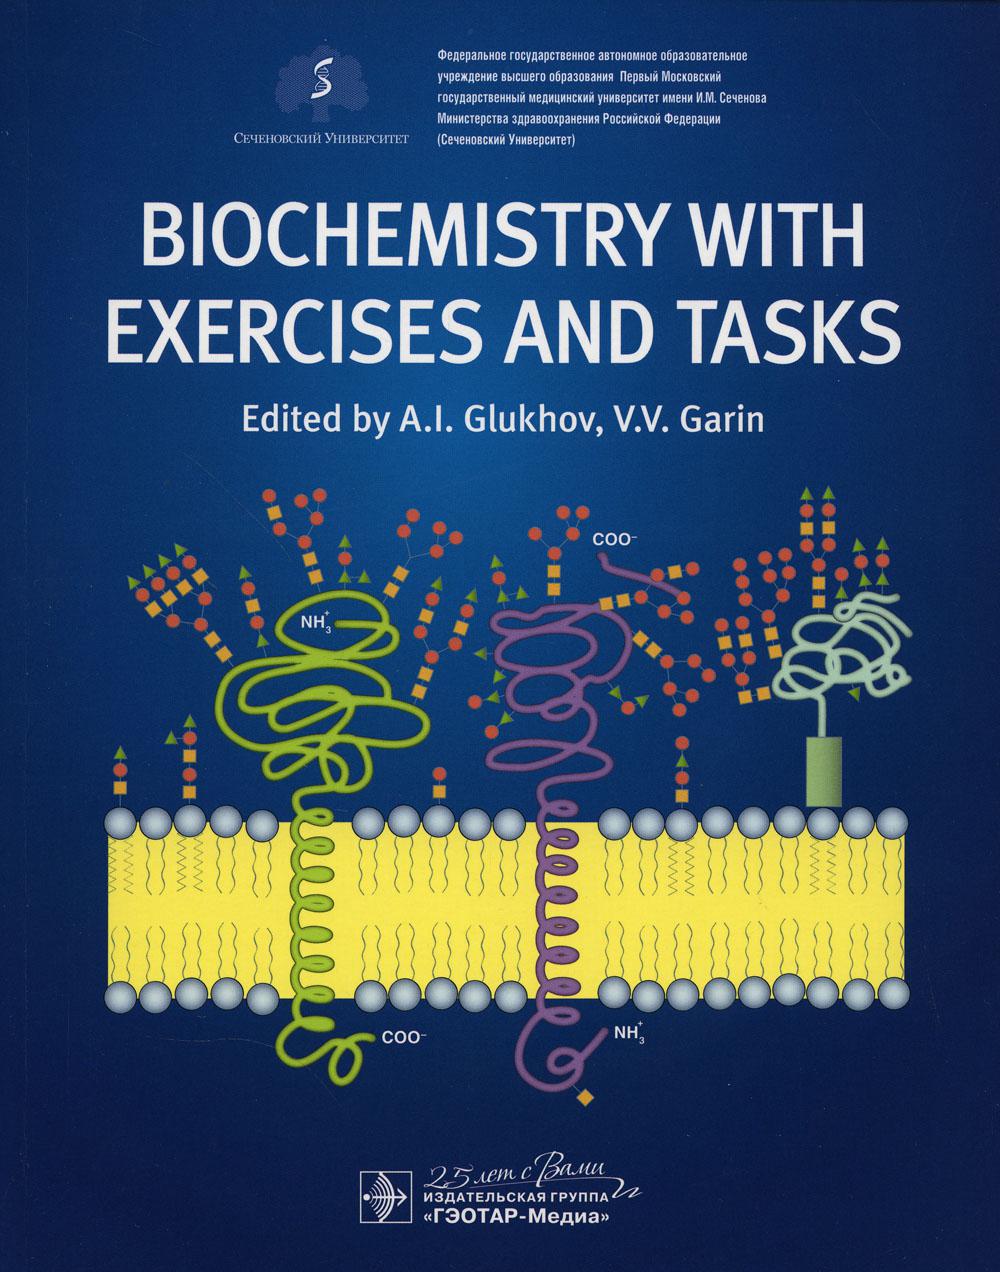 Biochemistry with exercises and tasks : textbook / ed. by . I. Glukhov, V. V. Garin.  M. : GEOTARMedia, 2020.  296 p. : ill.  DOI: 10.33029/9704-5317-9-BIO-2020-1-296.